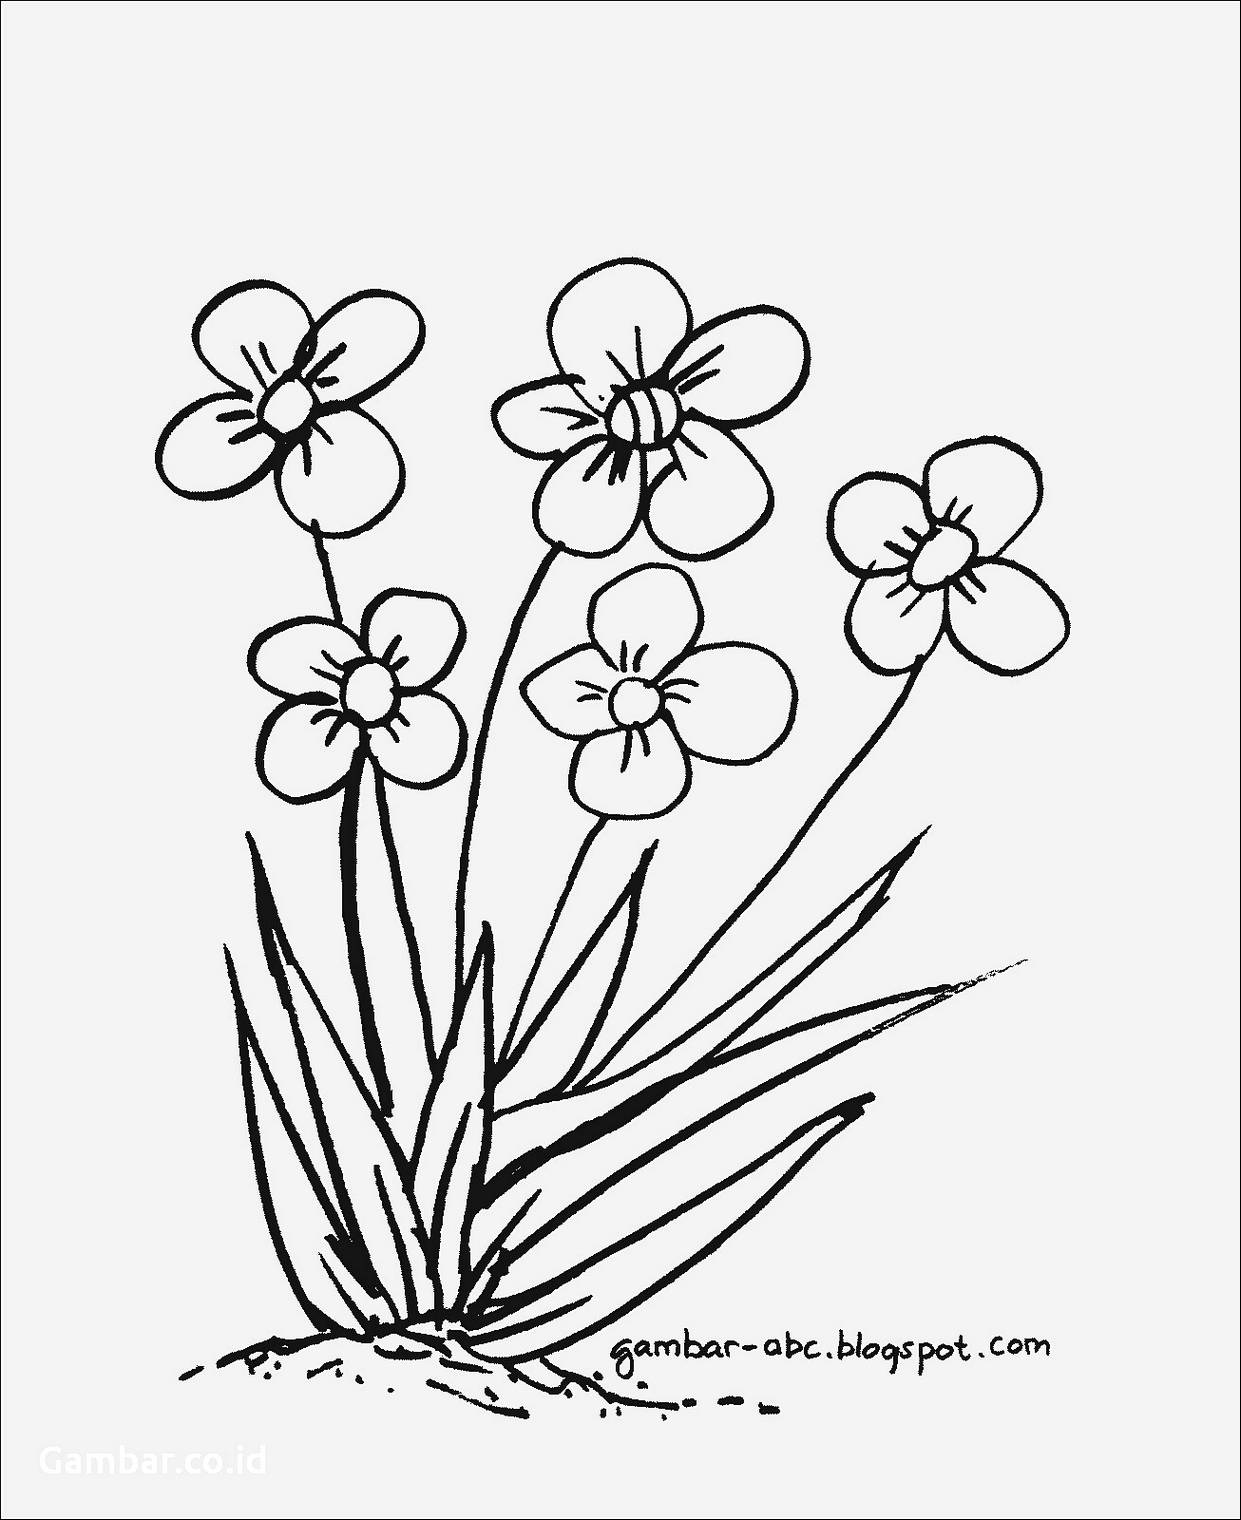 Gambar Mozaik Bunga Yang Mudah Kata Kata